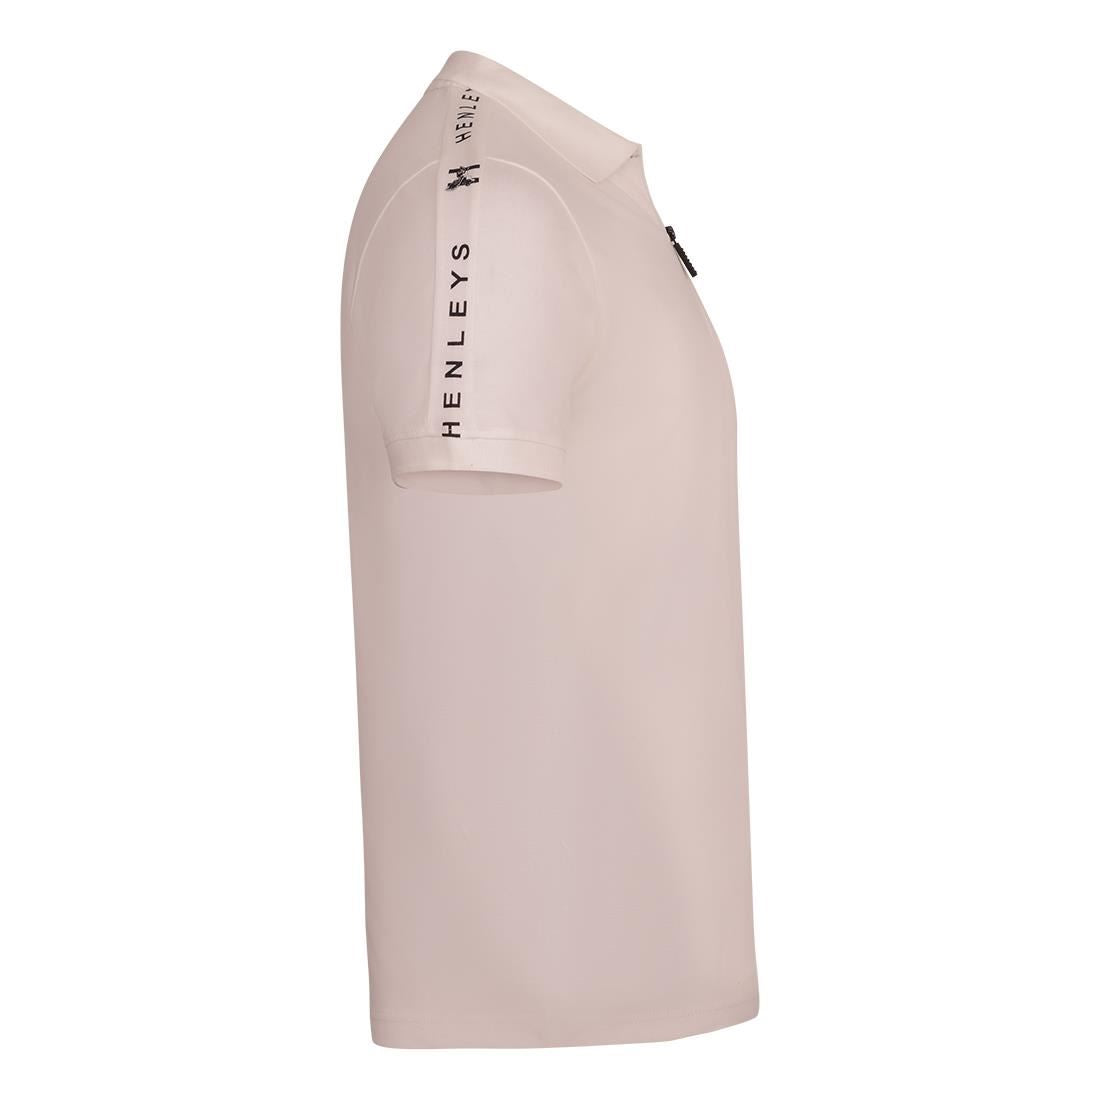 Henleys Mens 1/4 Zip Short Sleeve Pique Polo Shirt Quarter Zip Cotton T Shirt with Chest Logo